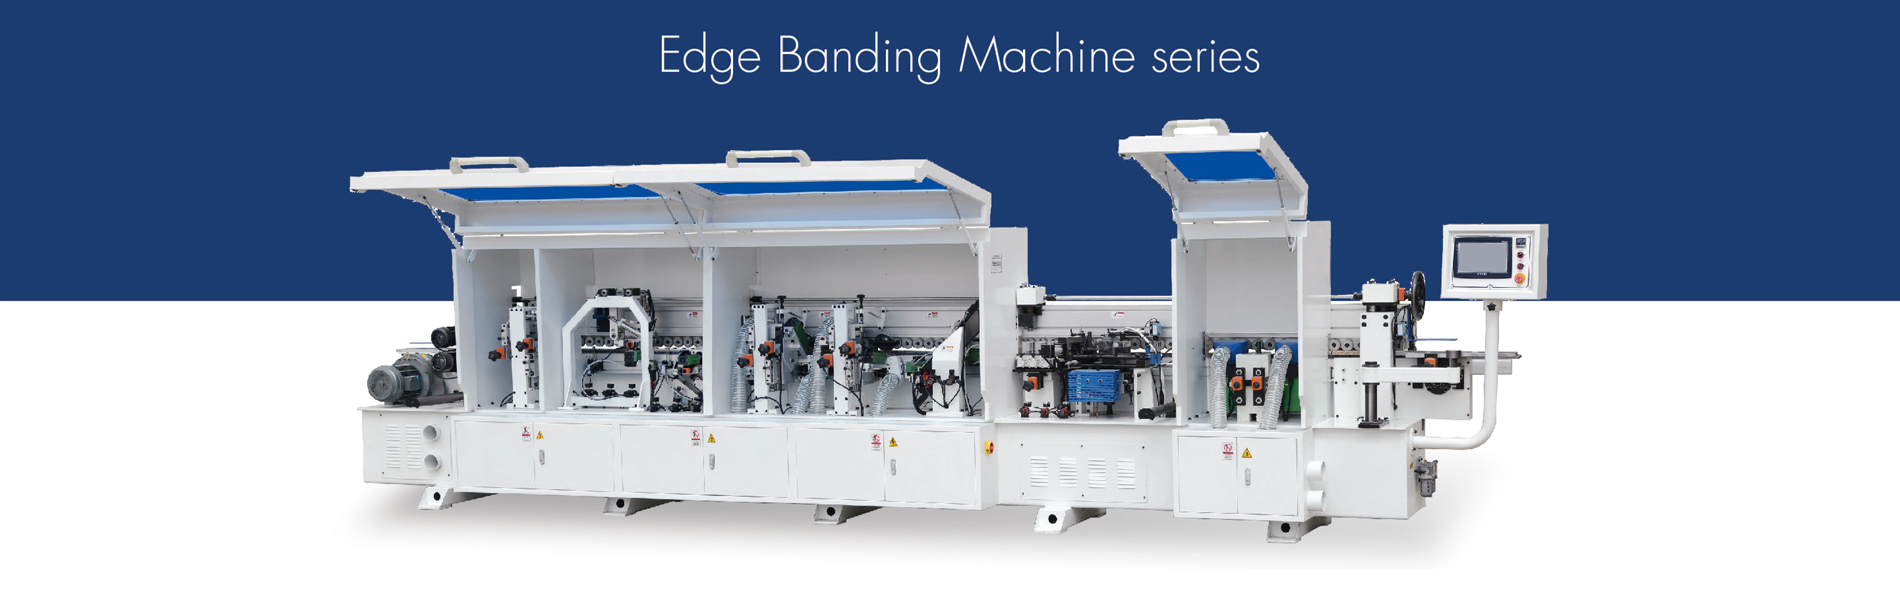 Edge Banding Machine